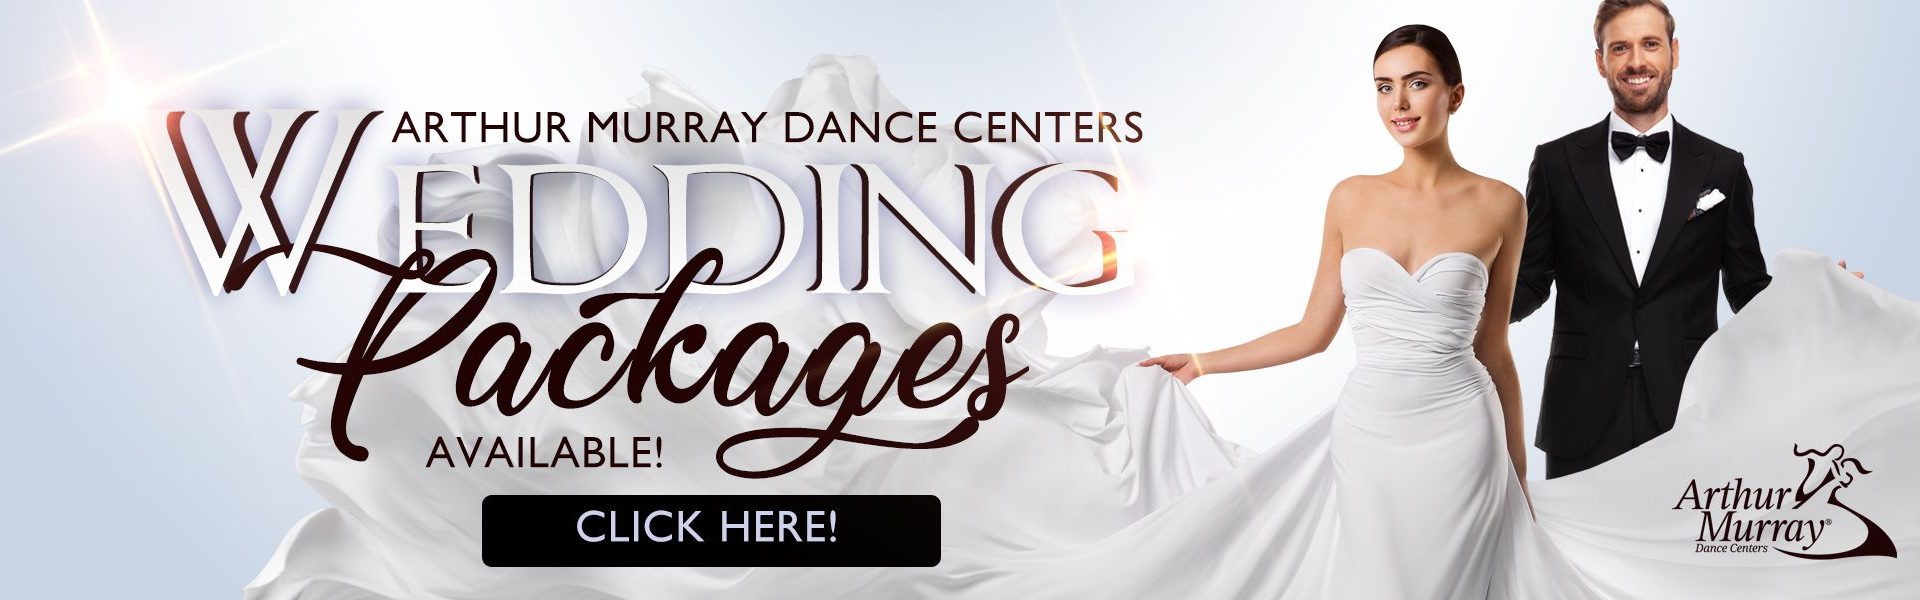 Arthur Murray Wedding Dance Packages Banner